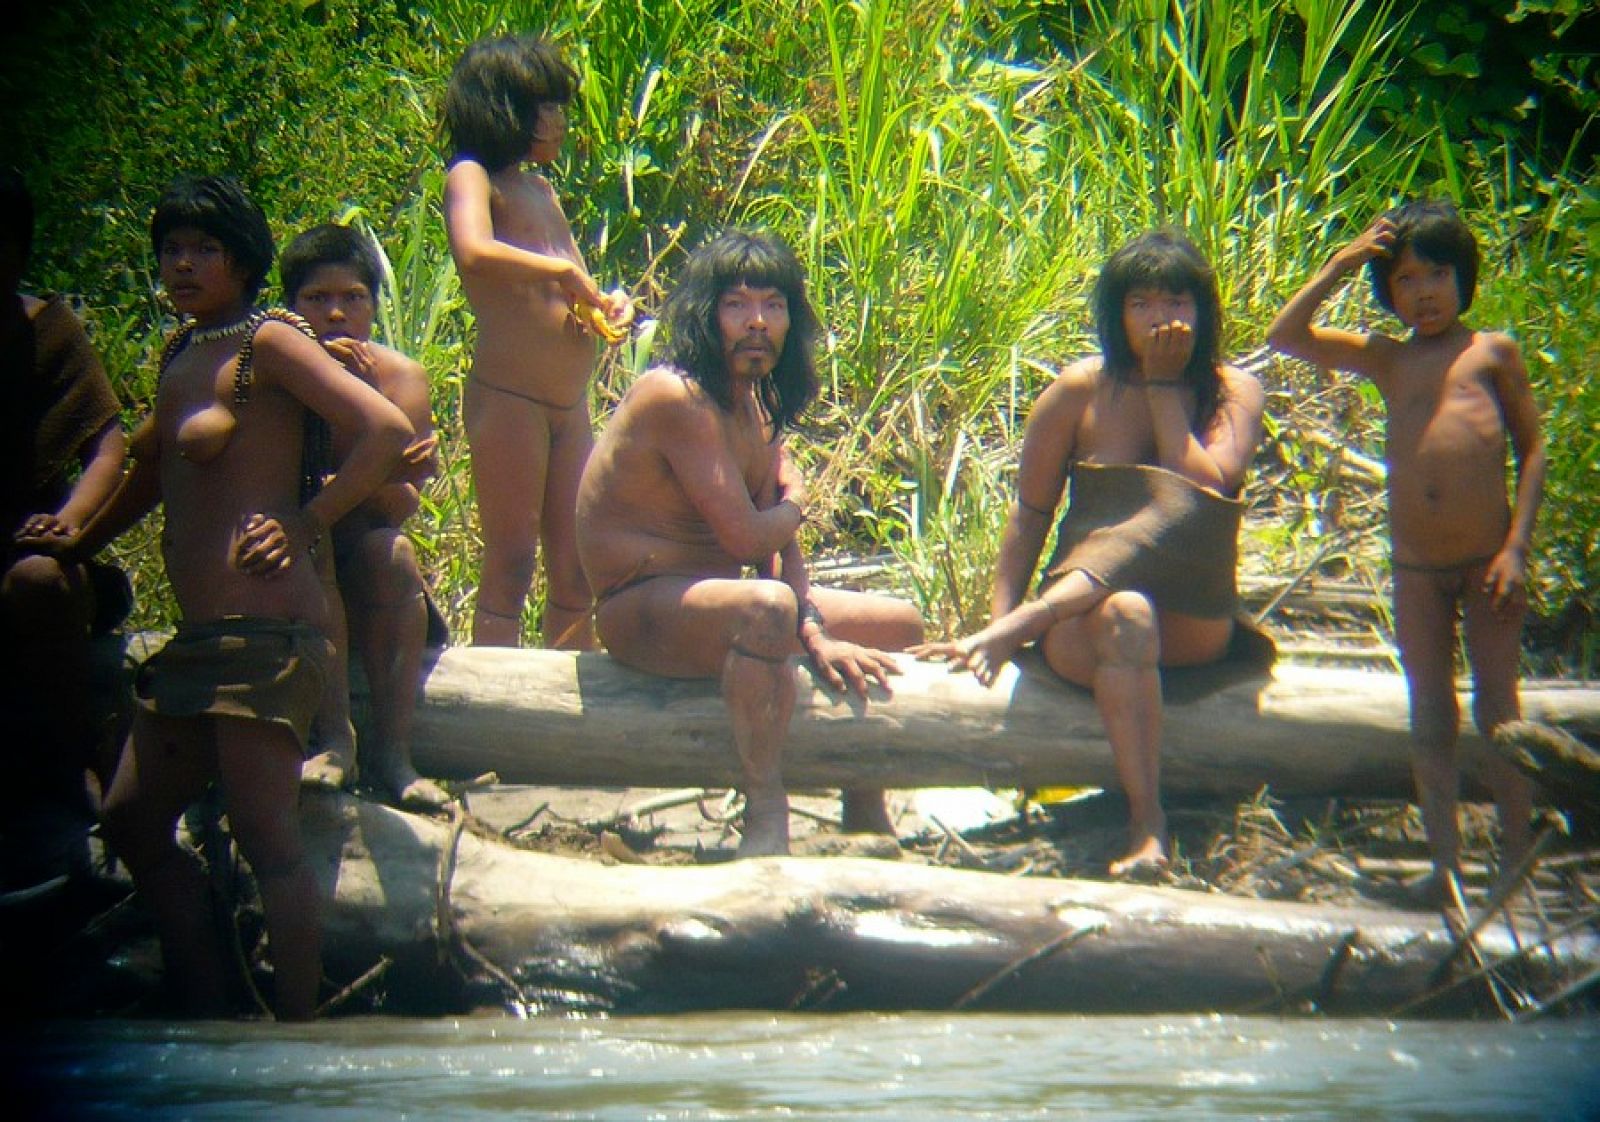 Las fotografías de Diego Cortijo retratan un núcleo familiar de la tribu de los mashco-piro.